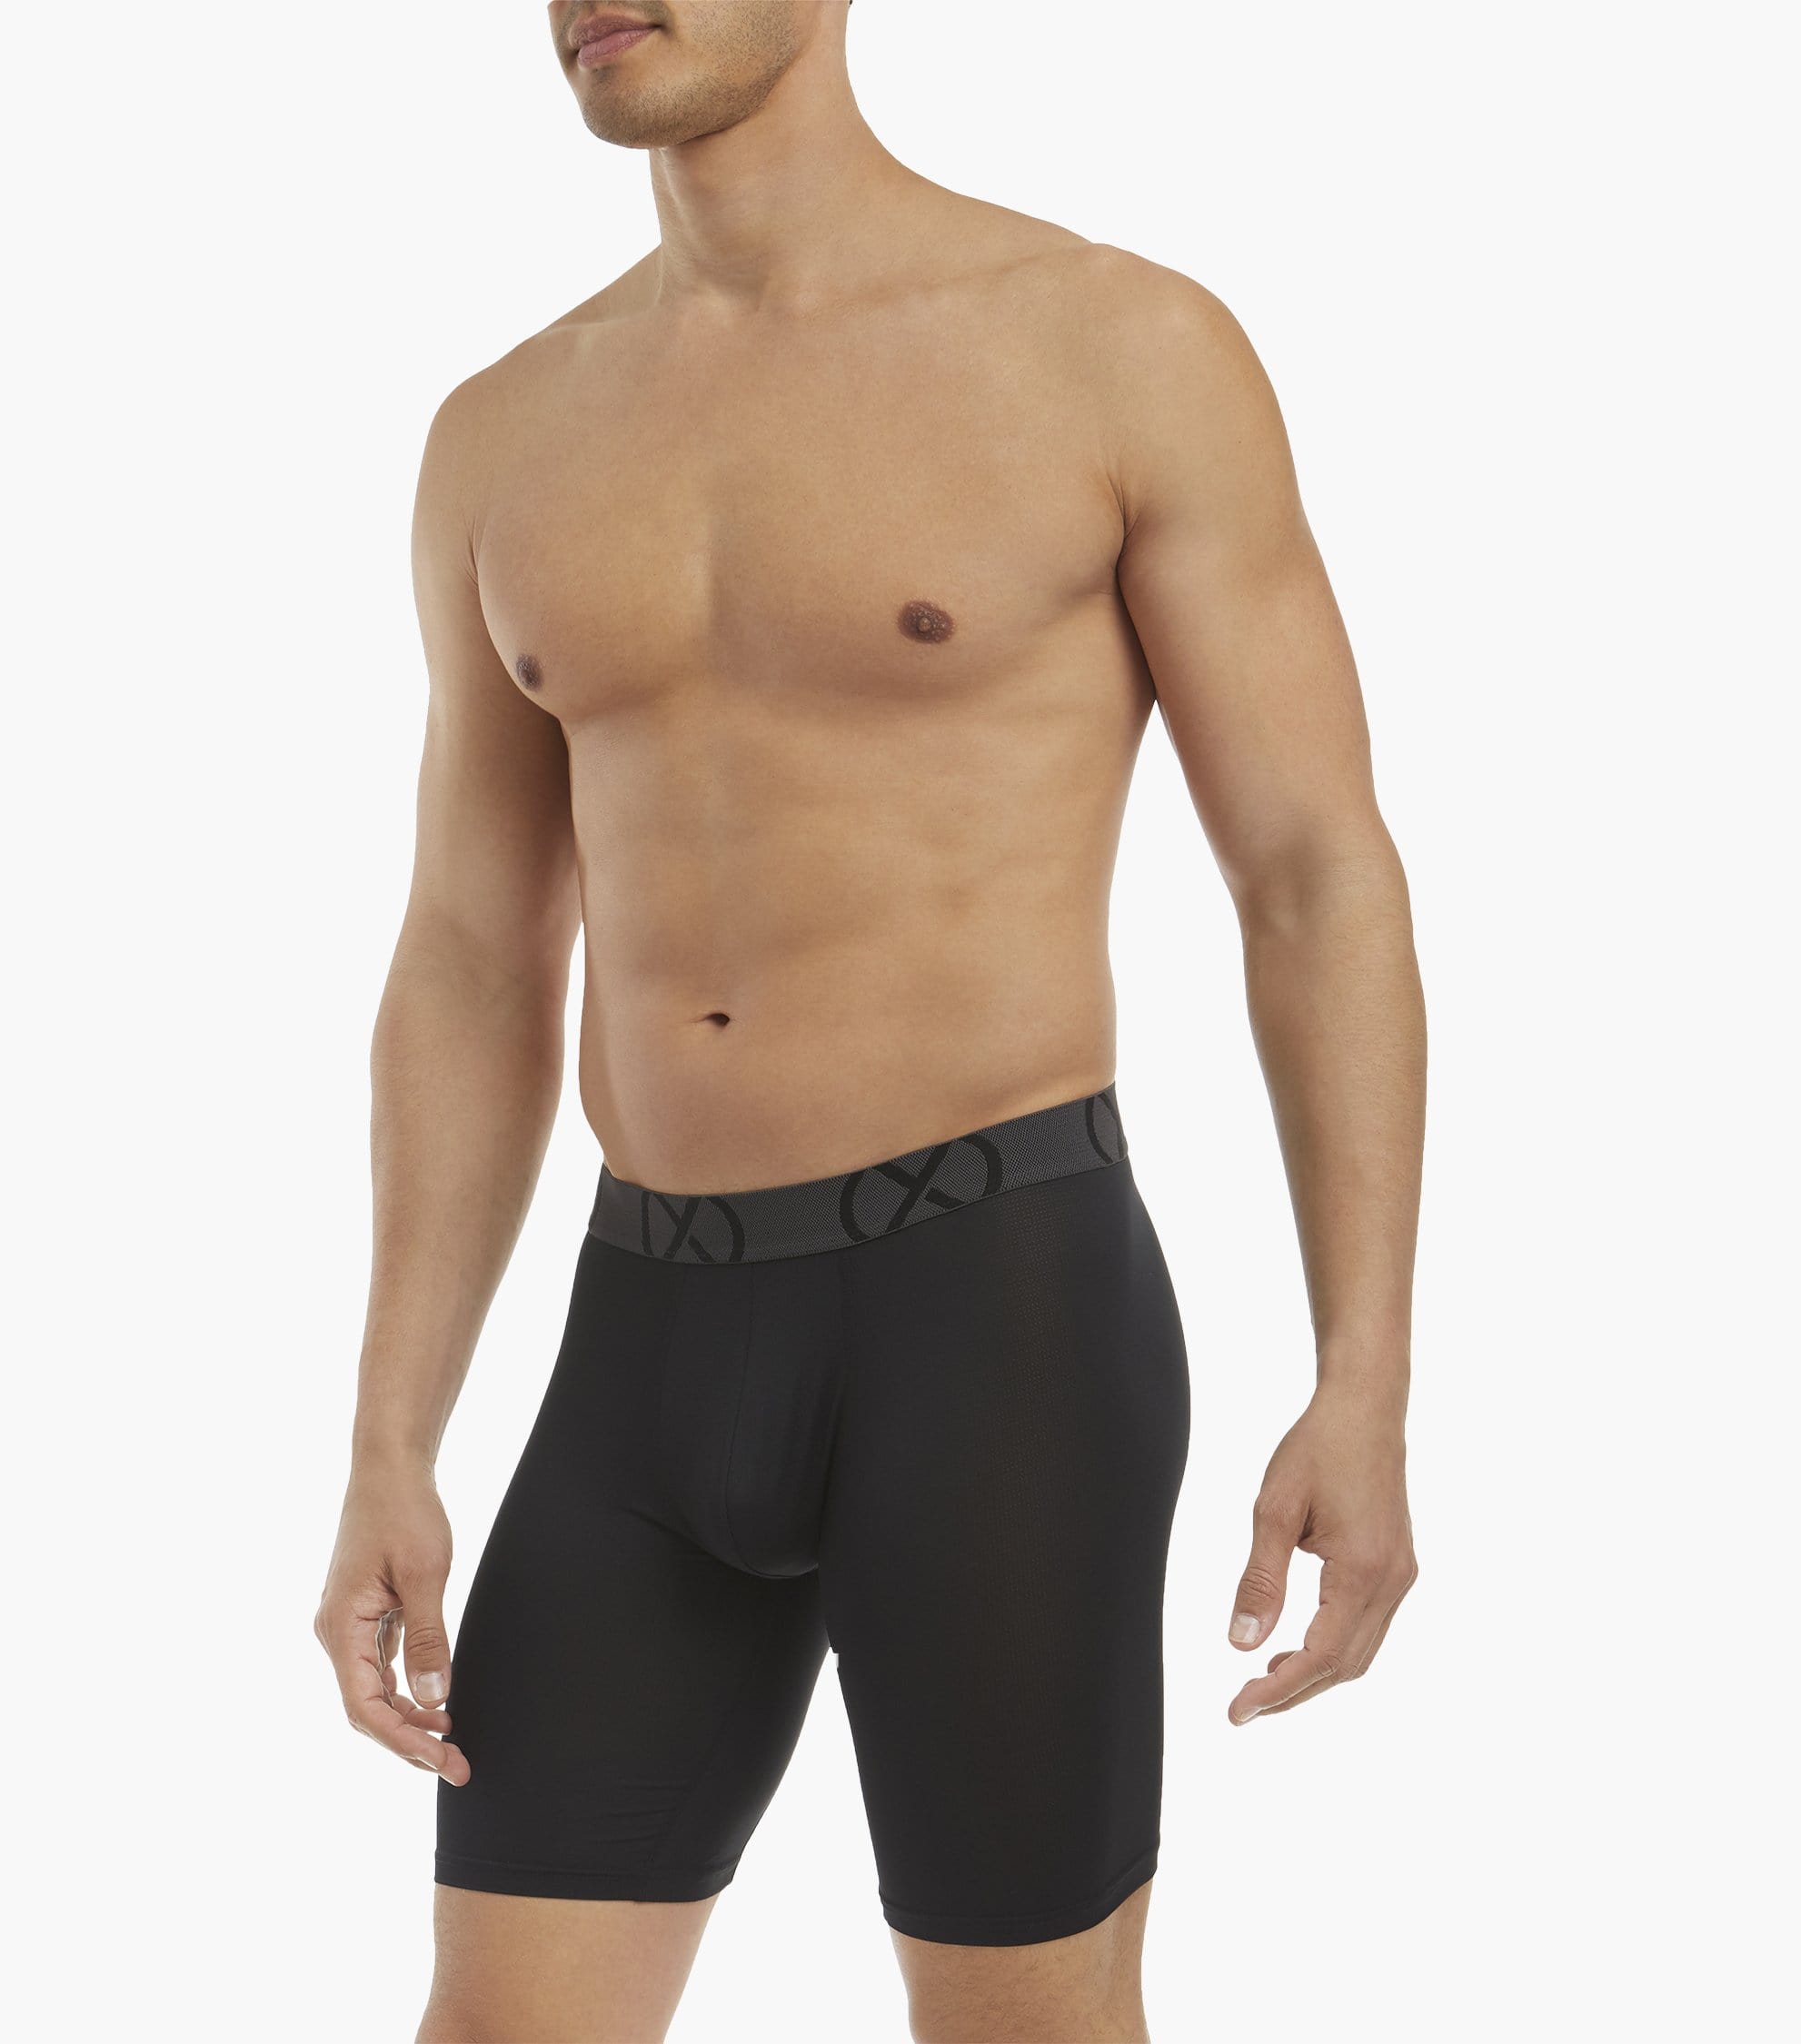 KaLI_store Underwear Men's Sport Performance Mesh Boxer Brief Underwear  Purple,XXL 